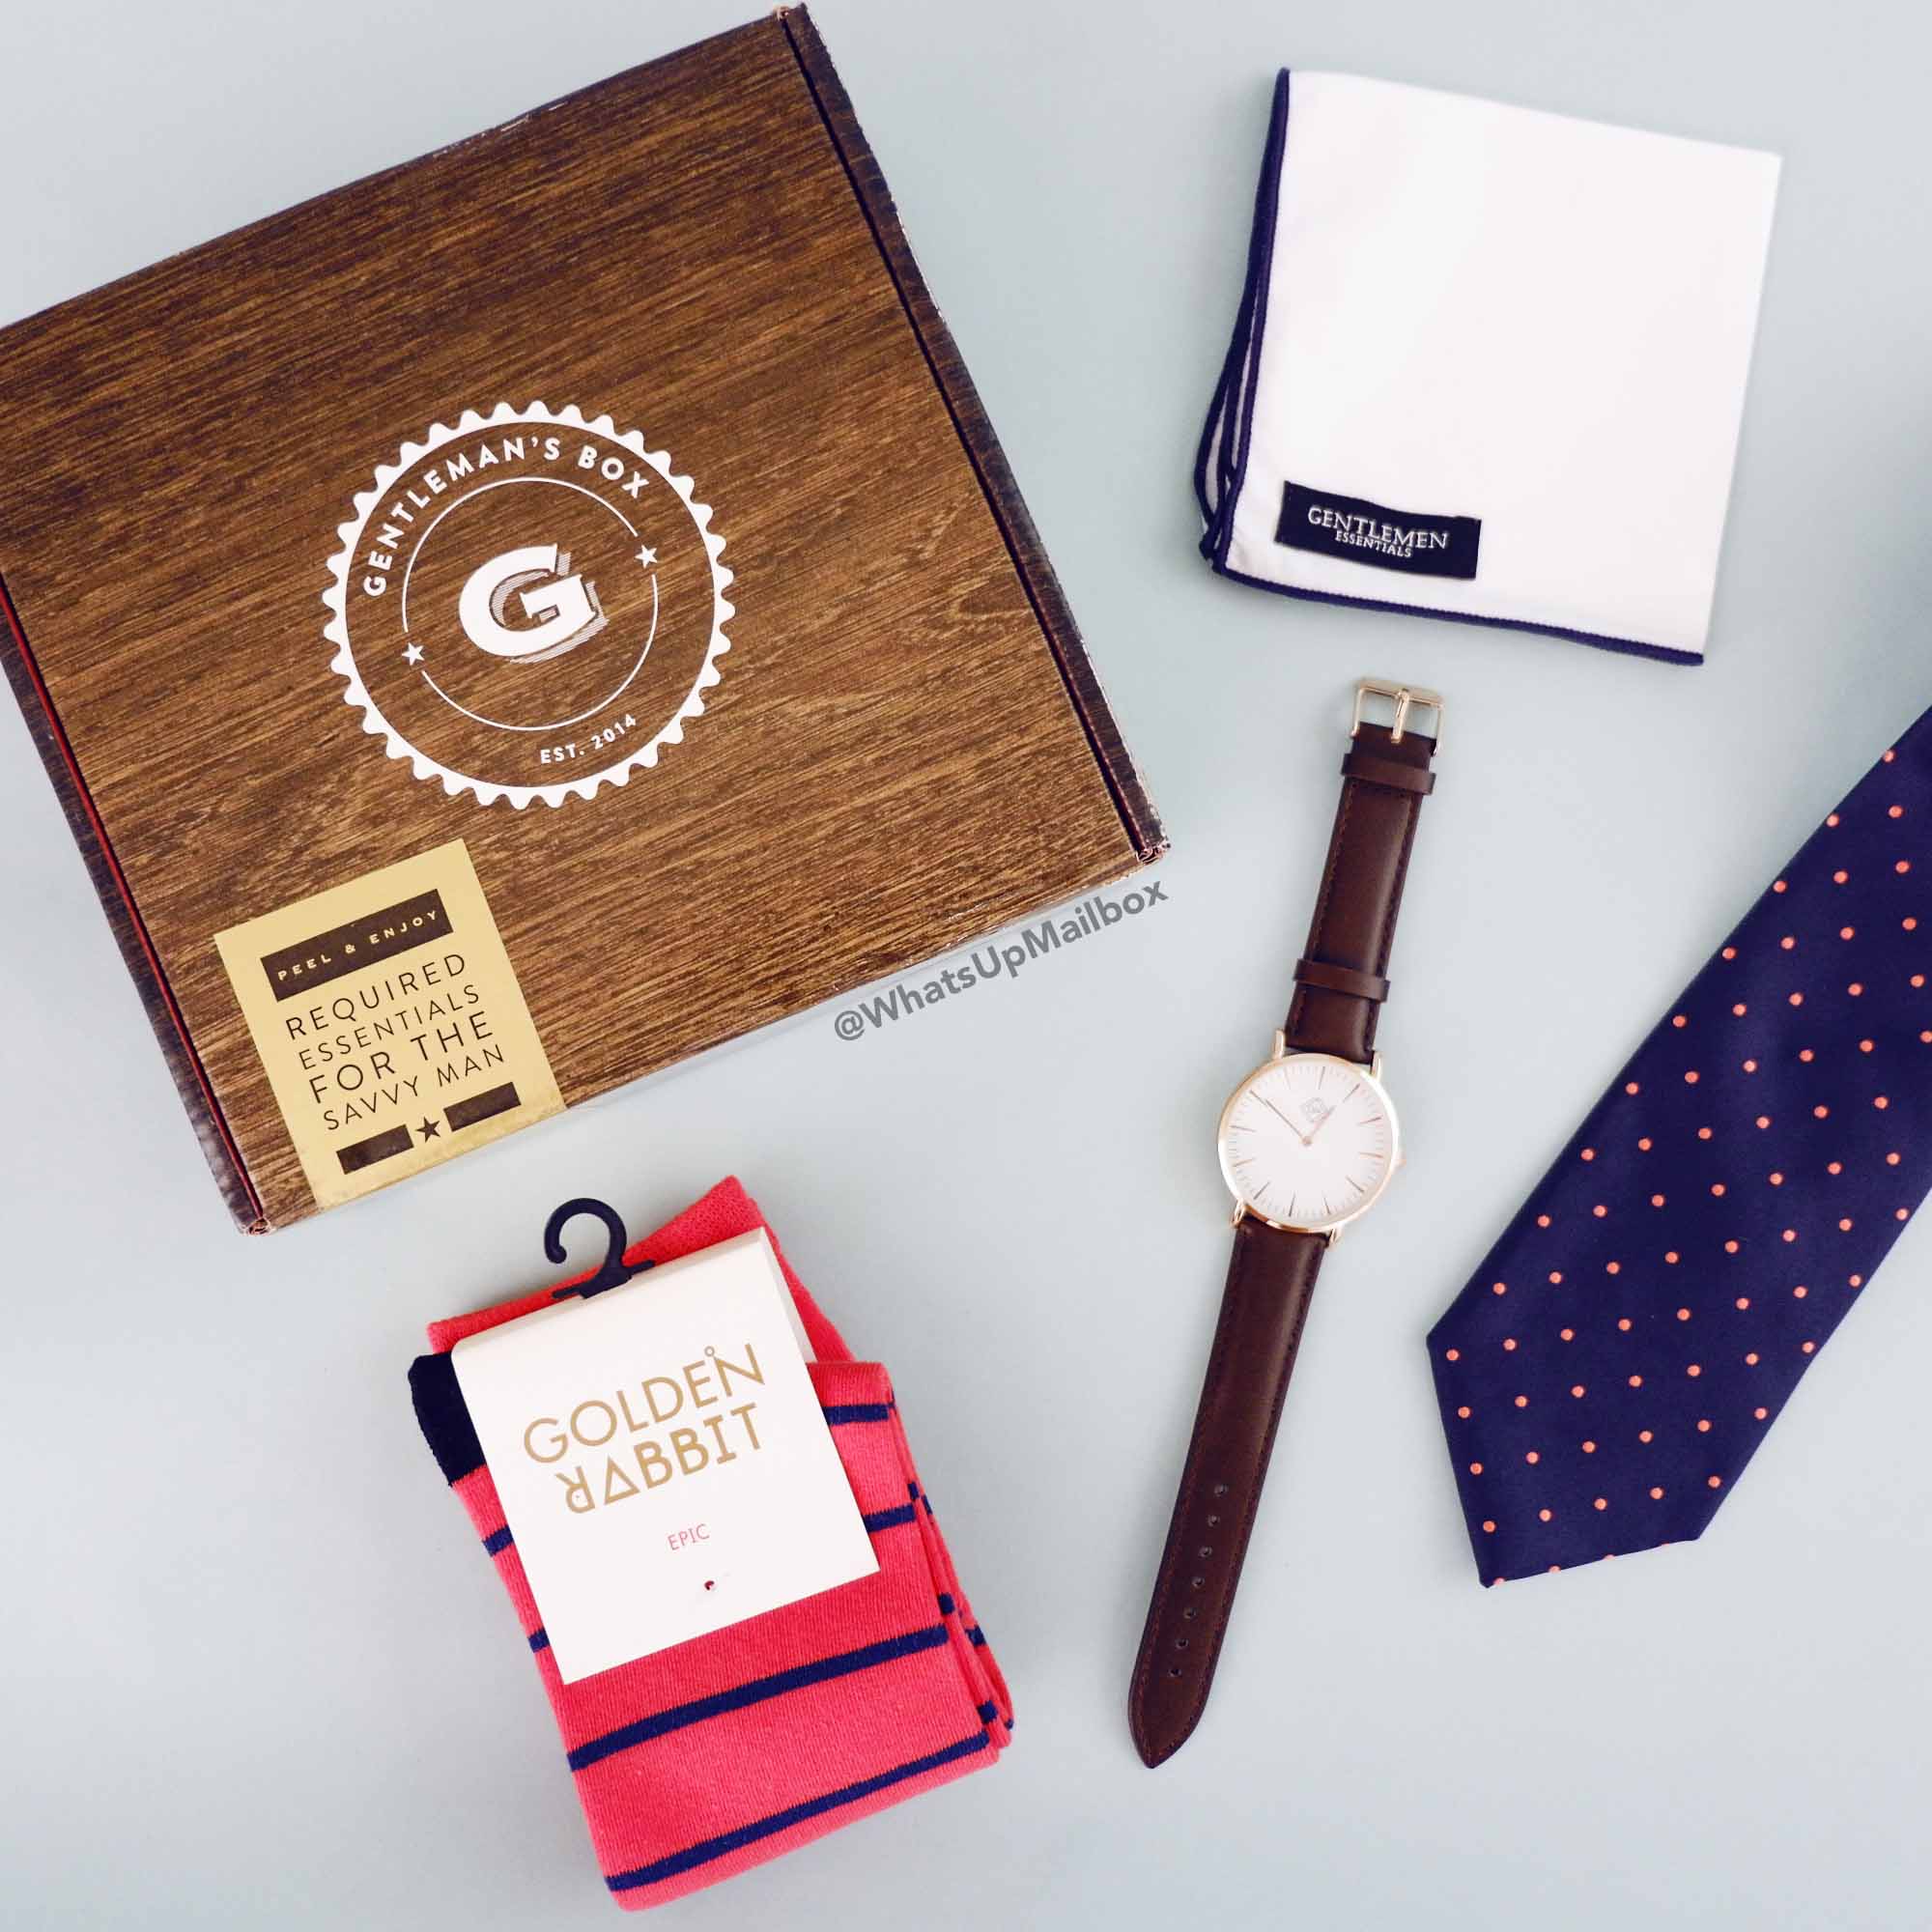 Gentleman's Box June 2017 Items